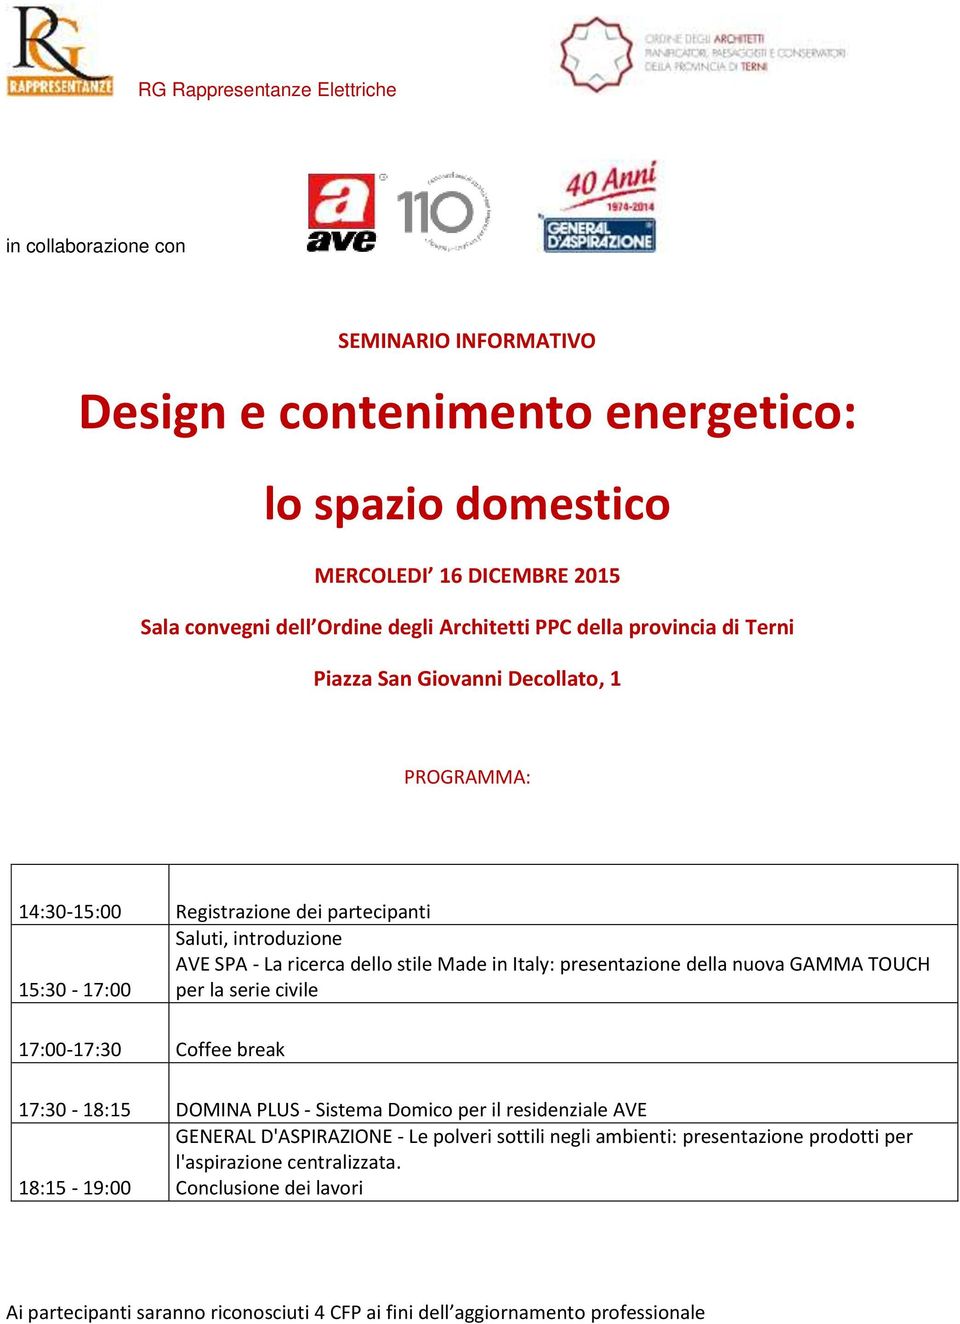 Italy: presentazione della nuova GAMMA TOUCH 15:30-17:00 per la serie civile 17:00-17:30 Coffee break 17:30-18:15 DOMINA PLUS - Sistema Domico per il residenziale AVE GENERAL D'ASPIRAZIONE - Le